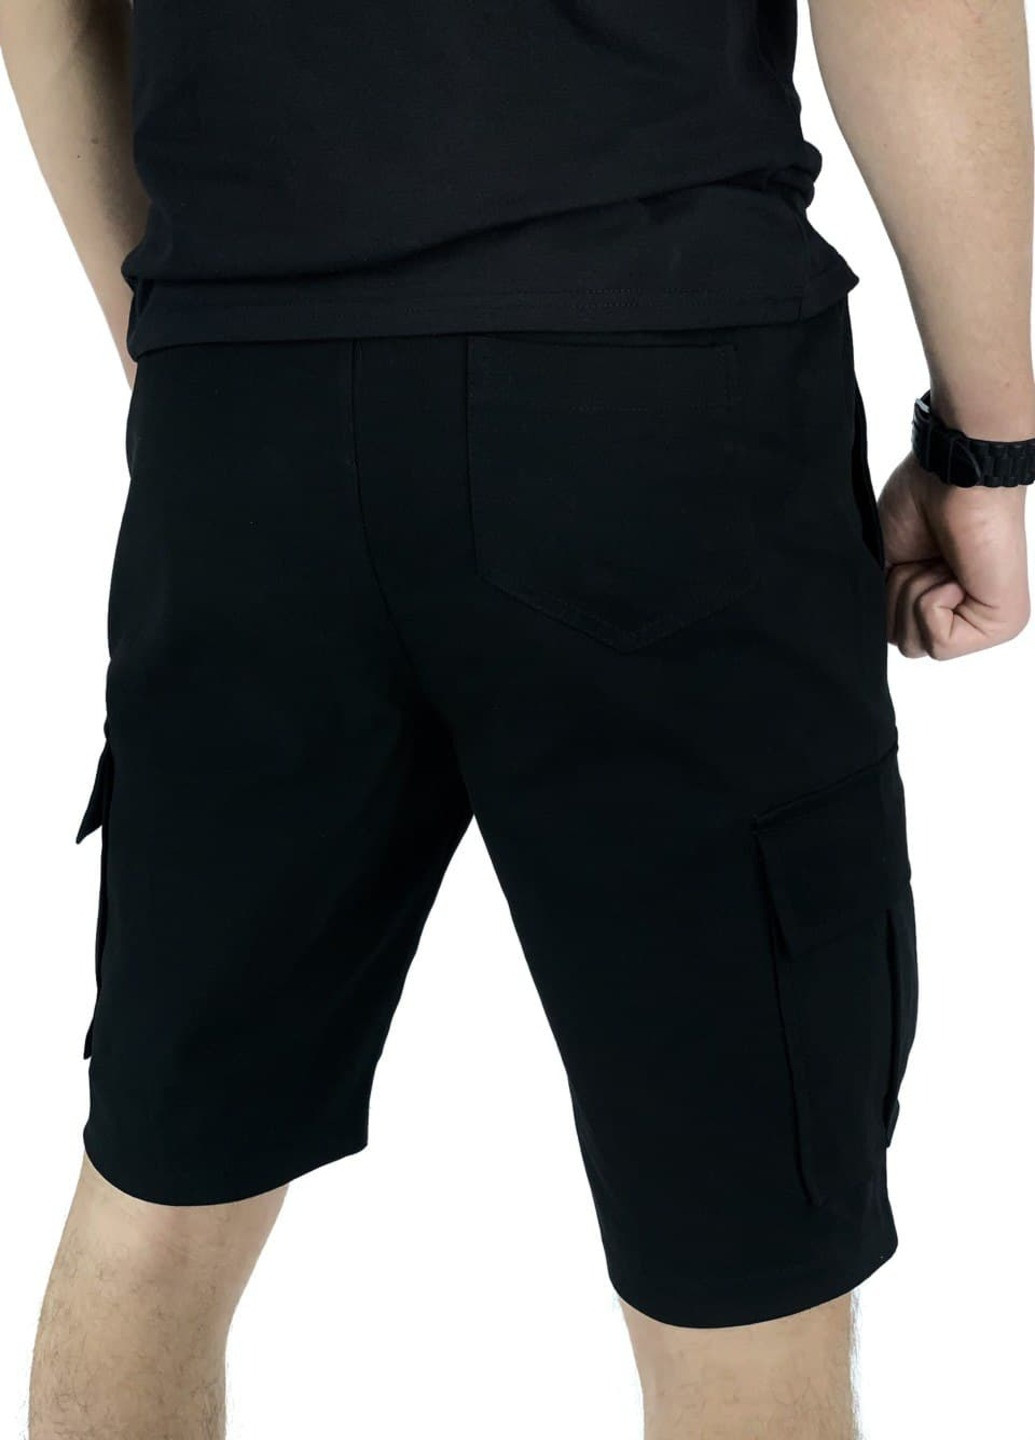 Комбинированный летний костюм летний мужской (футболка "color stripe" серая - черная + шорты miami черные) Intruder